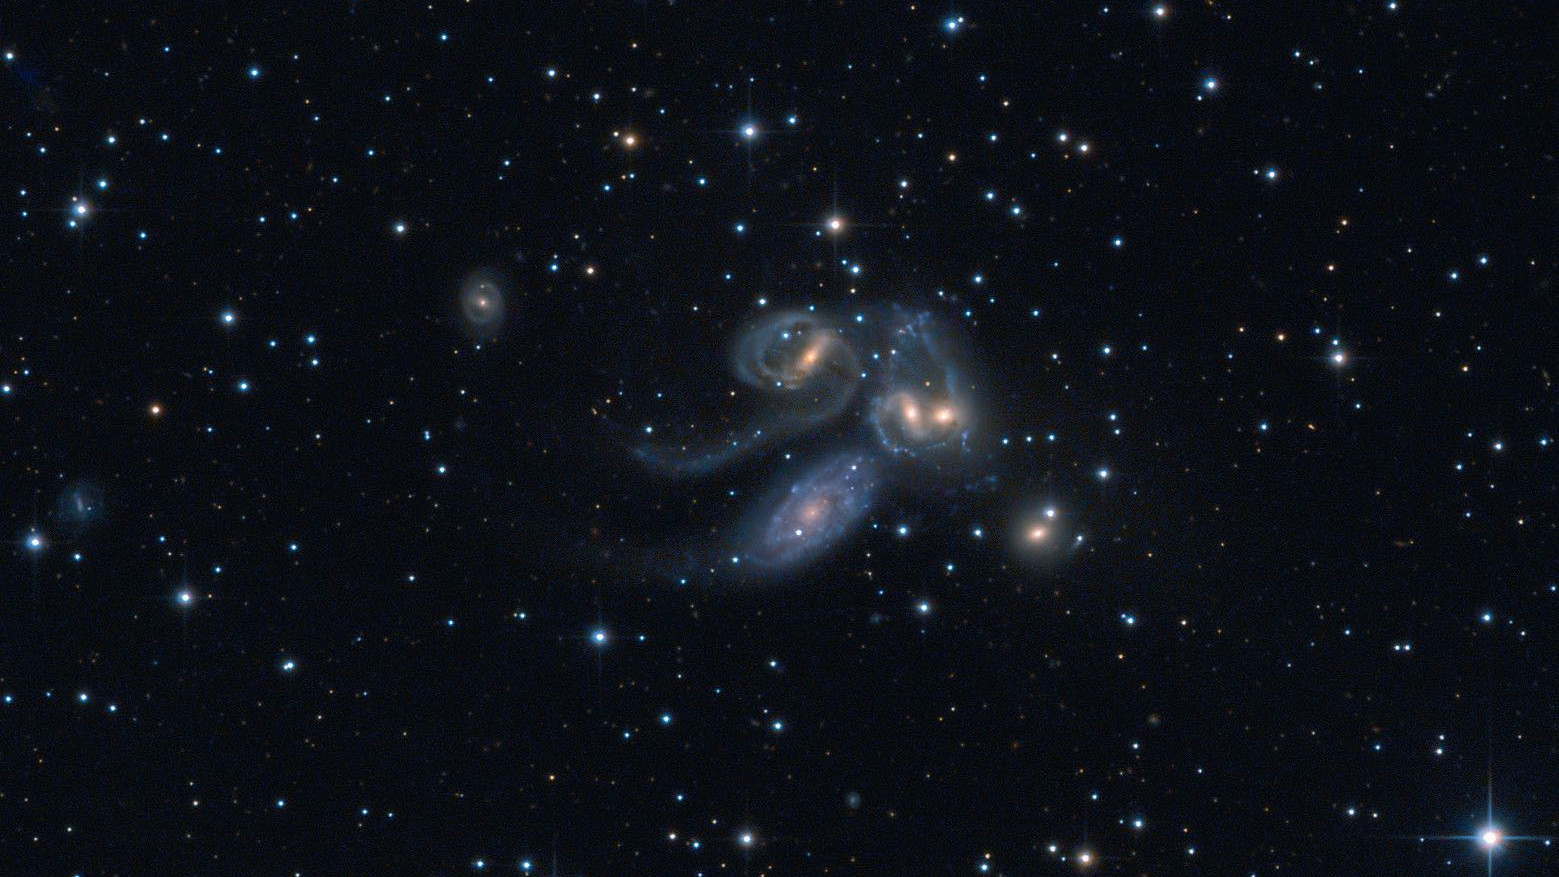 Stephans kvintett: NGC 7320C (överst till vänster), NGC 7319, NGC 7318B och NGC 7318A samt
NGC 7217 (längst ned till höger). NGC 7320 (nere till vänster) är inte en del av gruppen. Wolfgang Promper